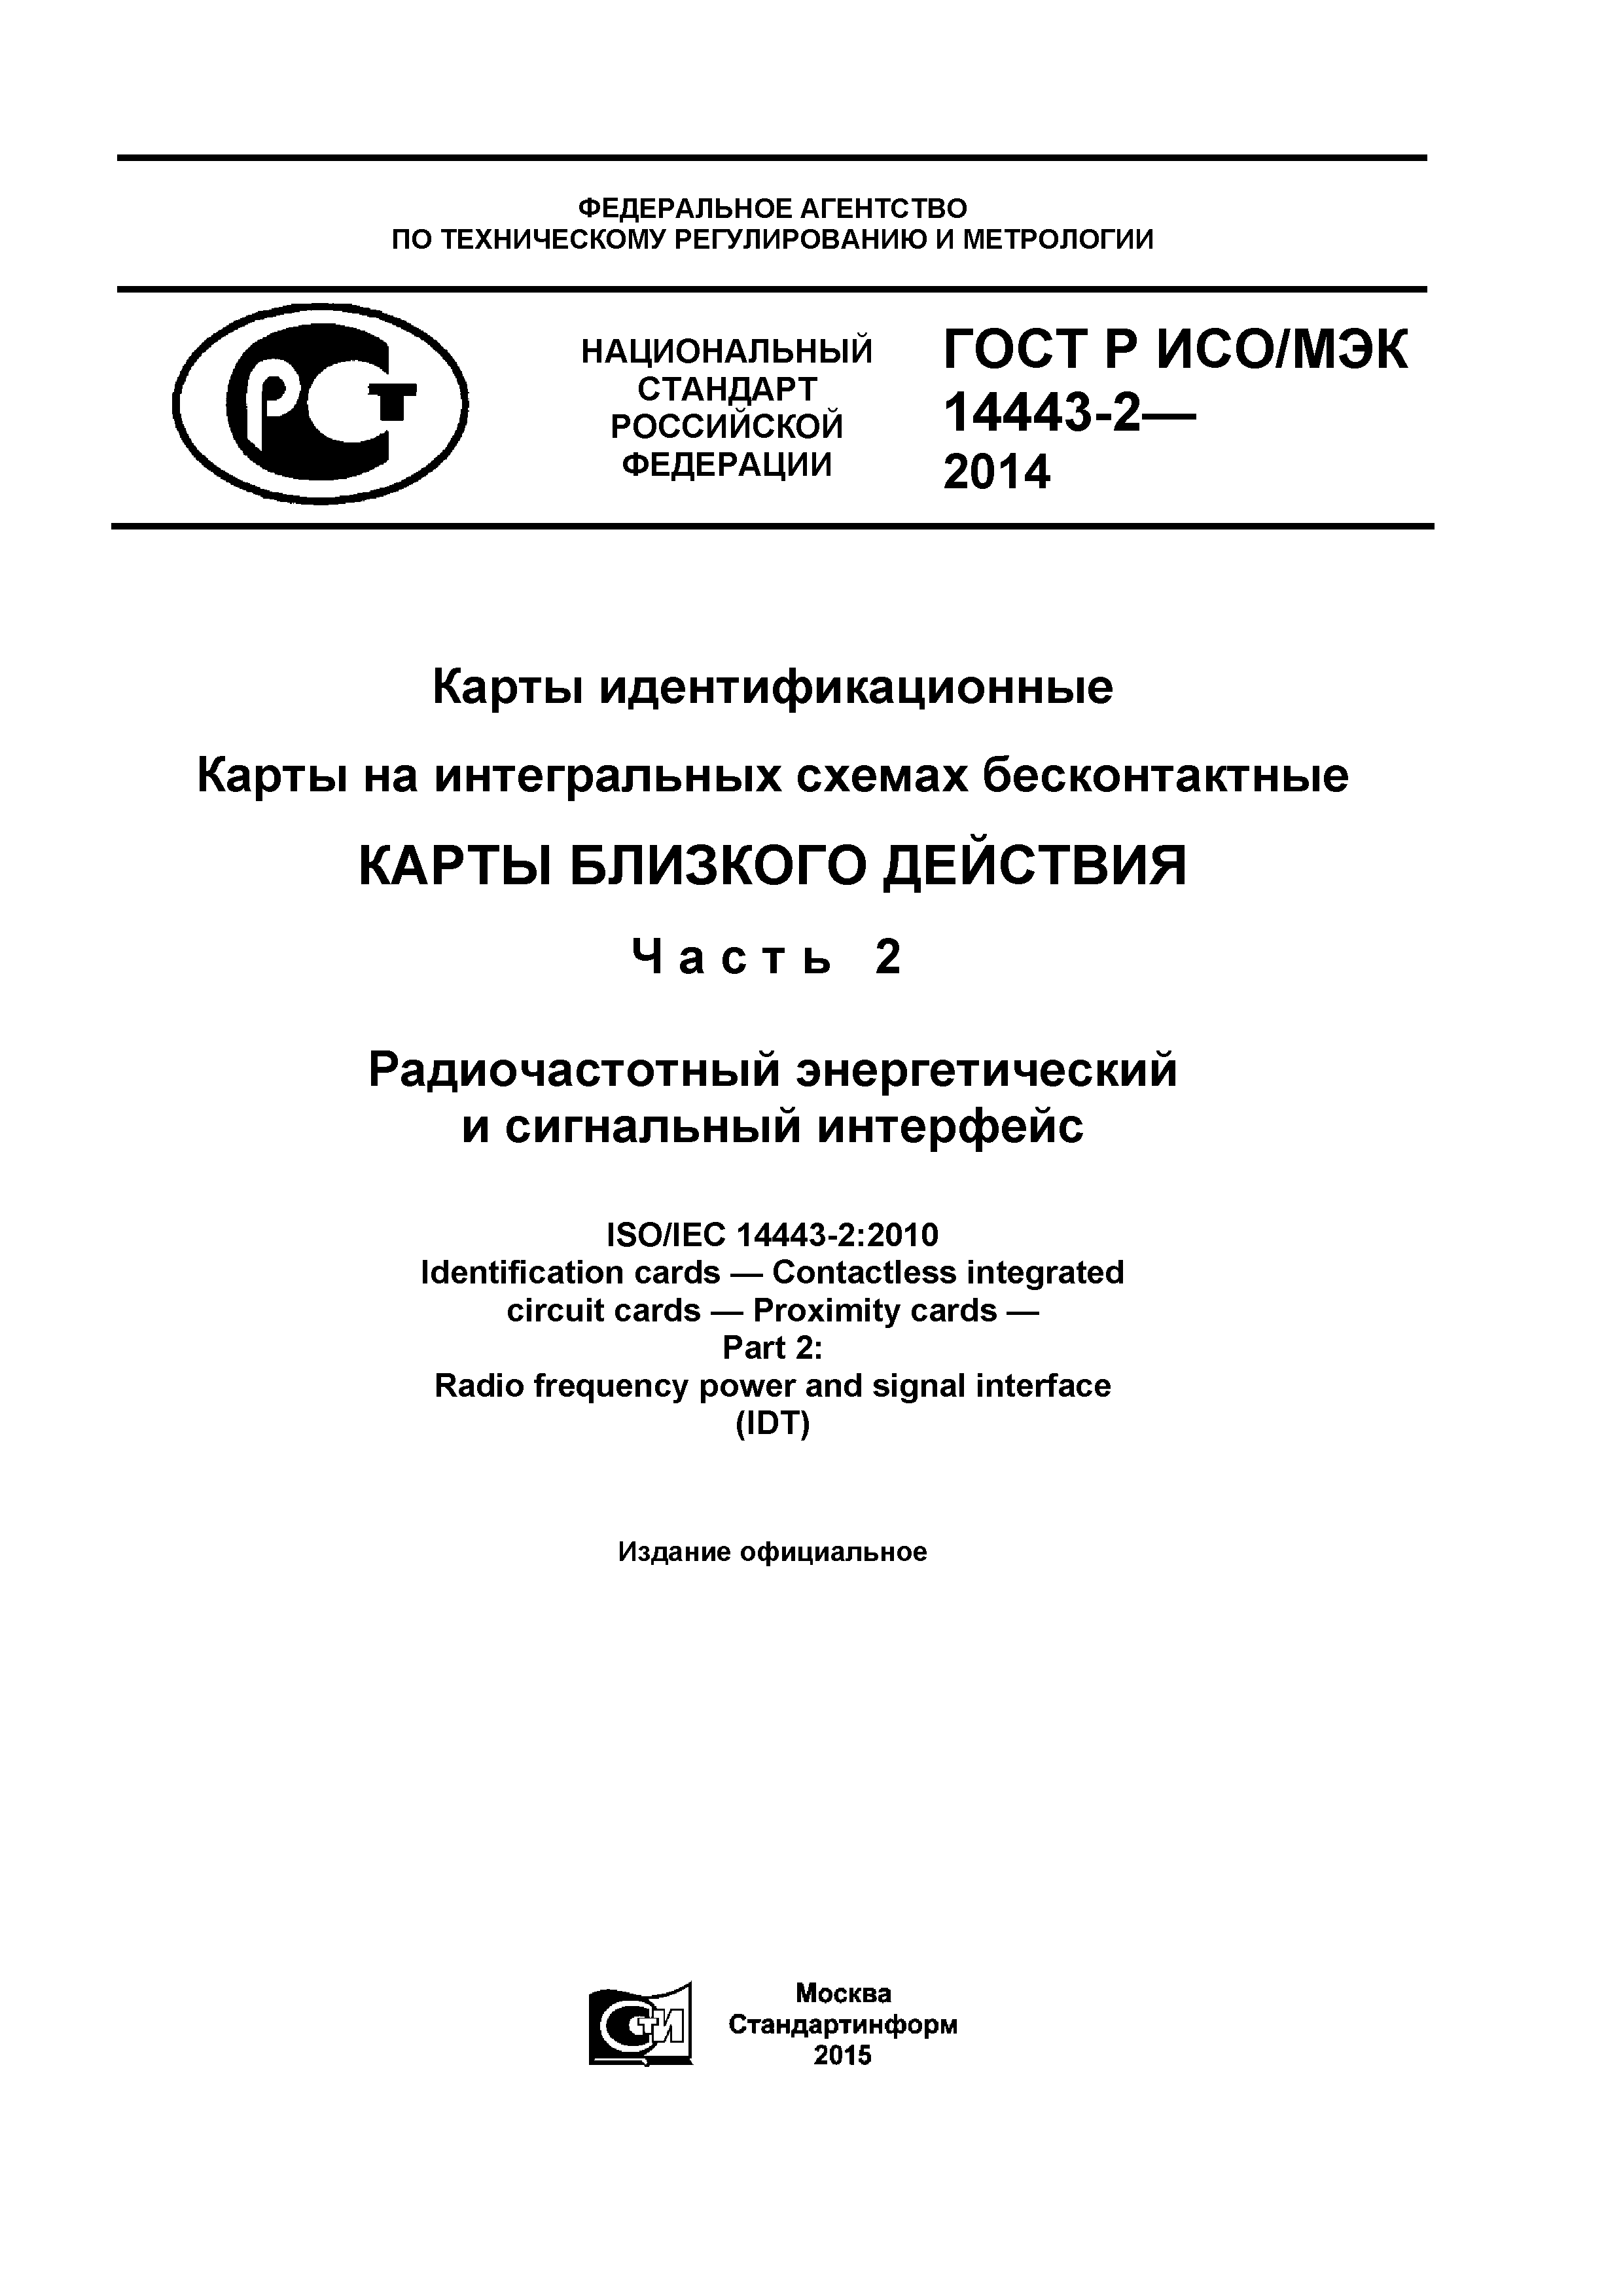 ГОСТ Р ИСО/МЭК 14443-2-2014